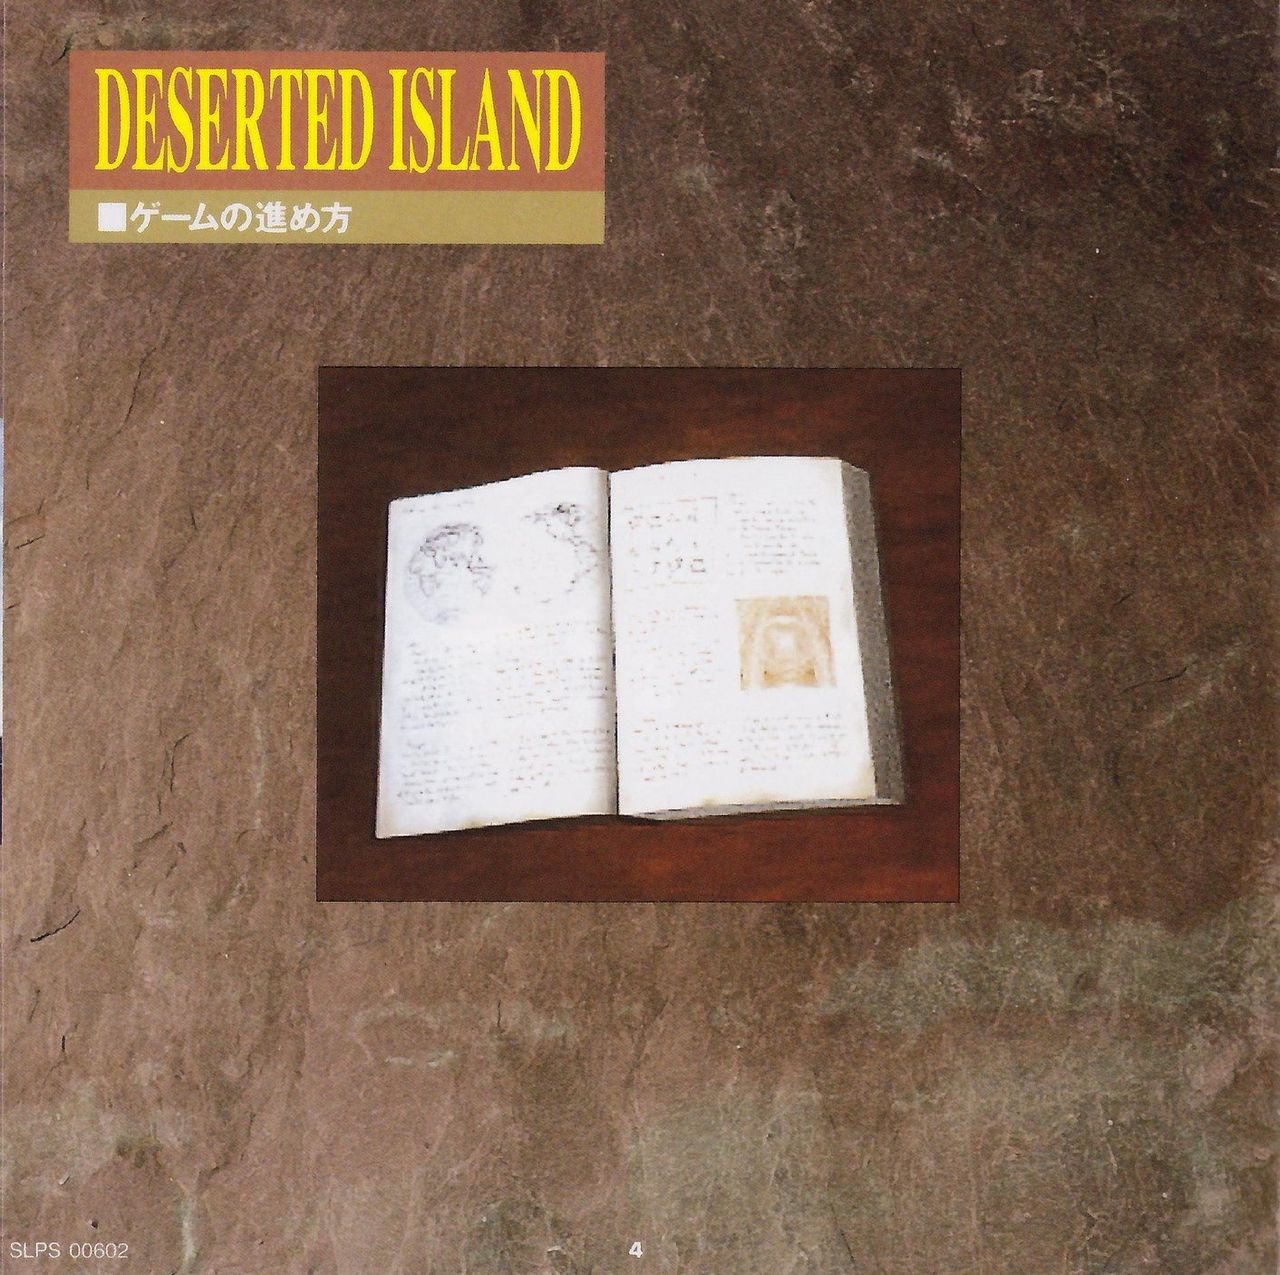 [KSS] Deserted Island - Manual 7